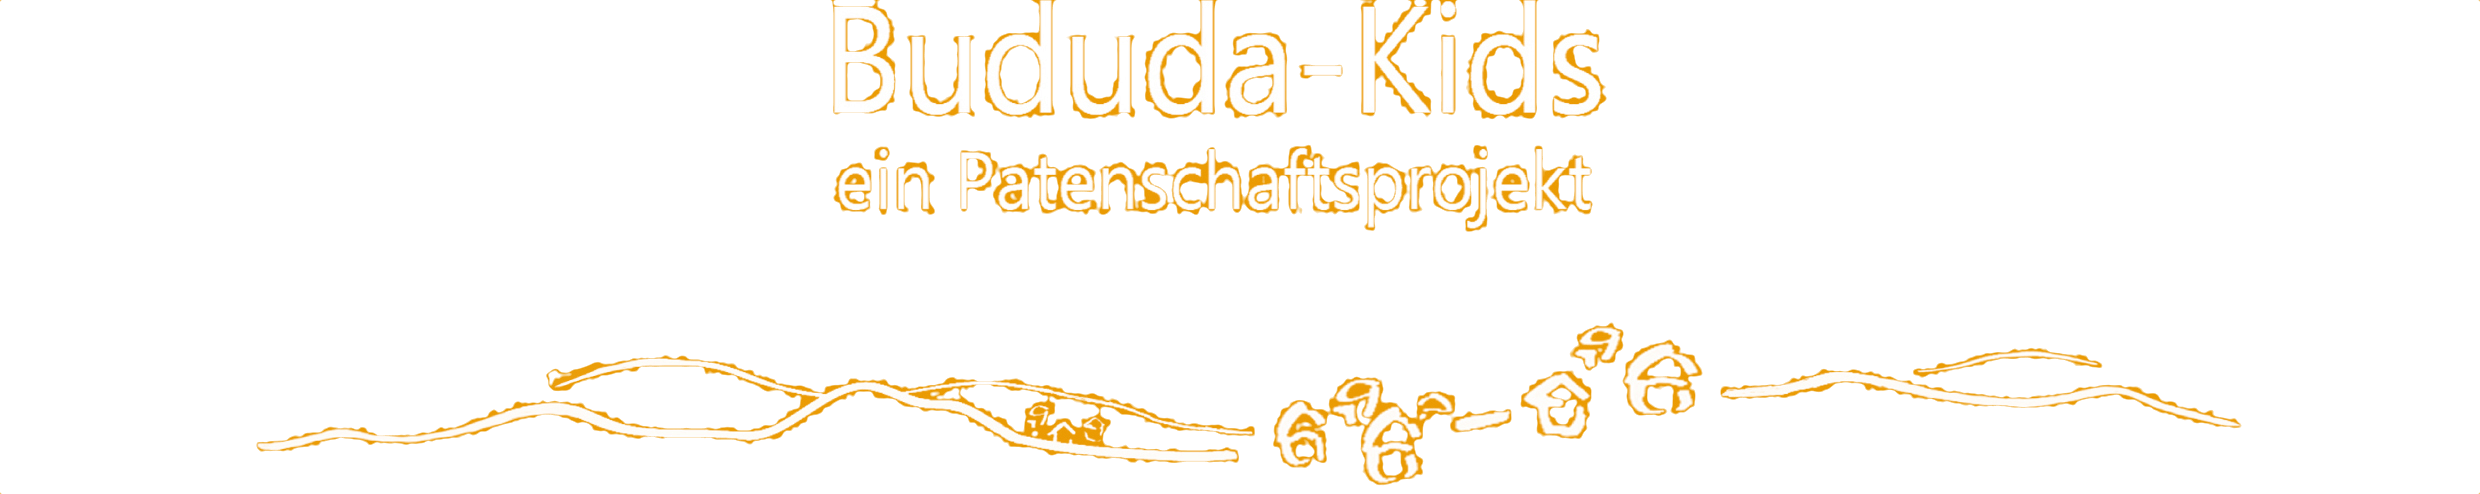 Bududa-Kids Logo